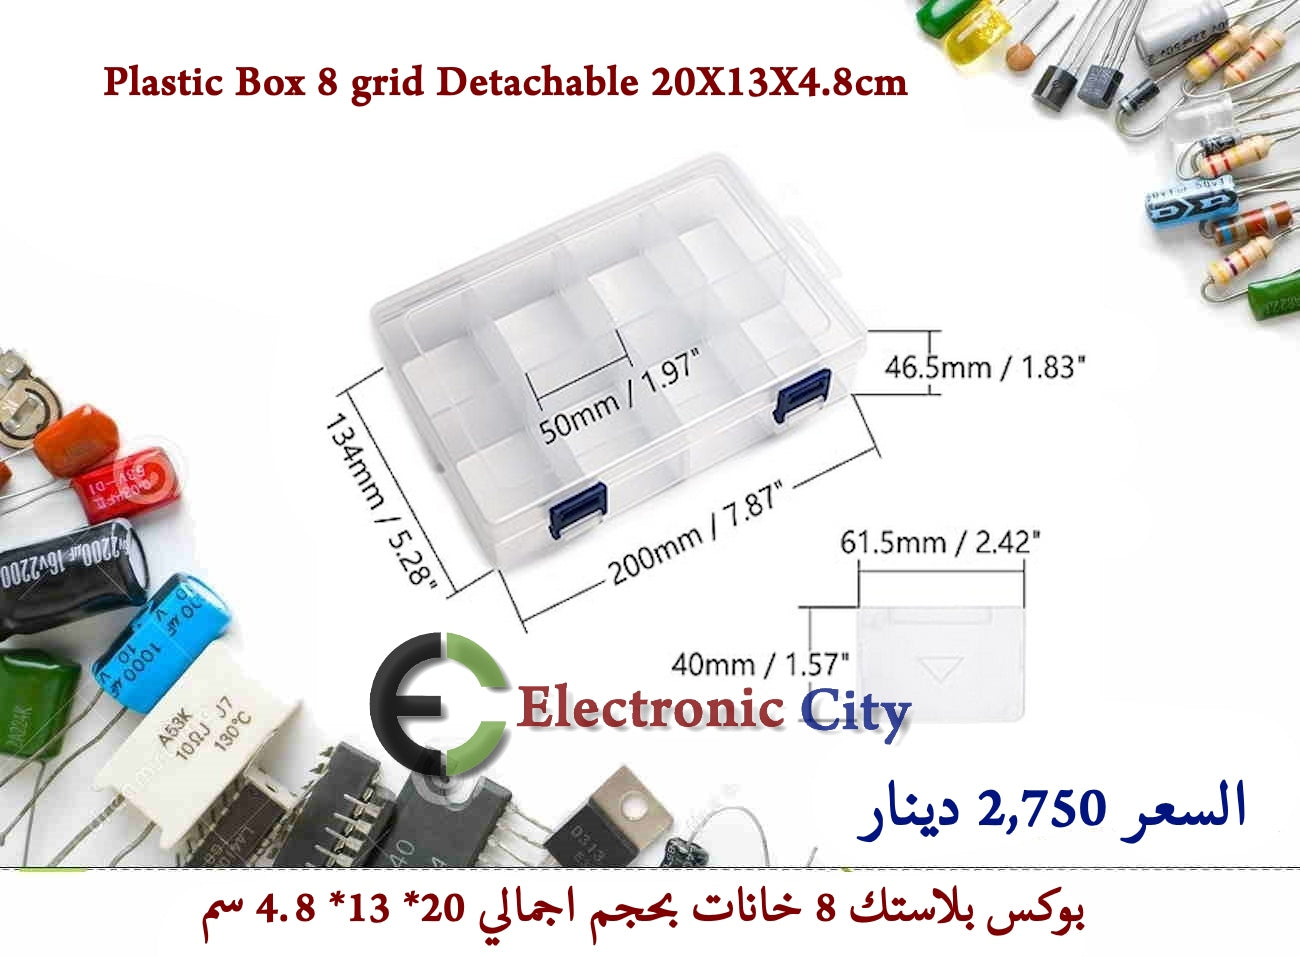 Plastic Box 8 grid Detachable 20X13X4.8cm